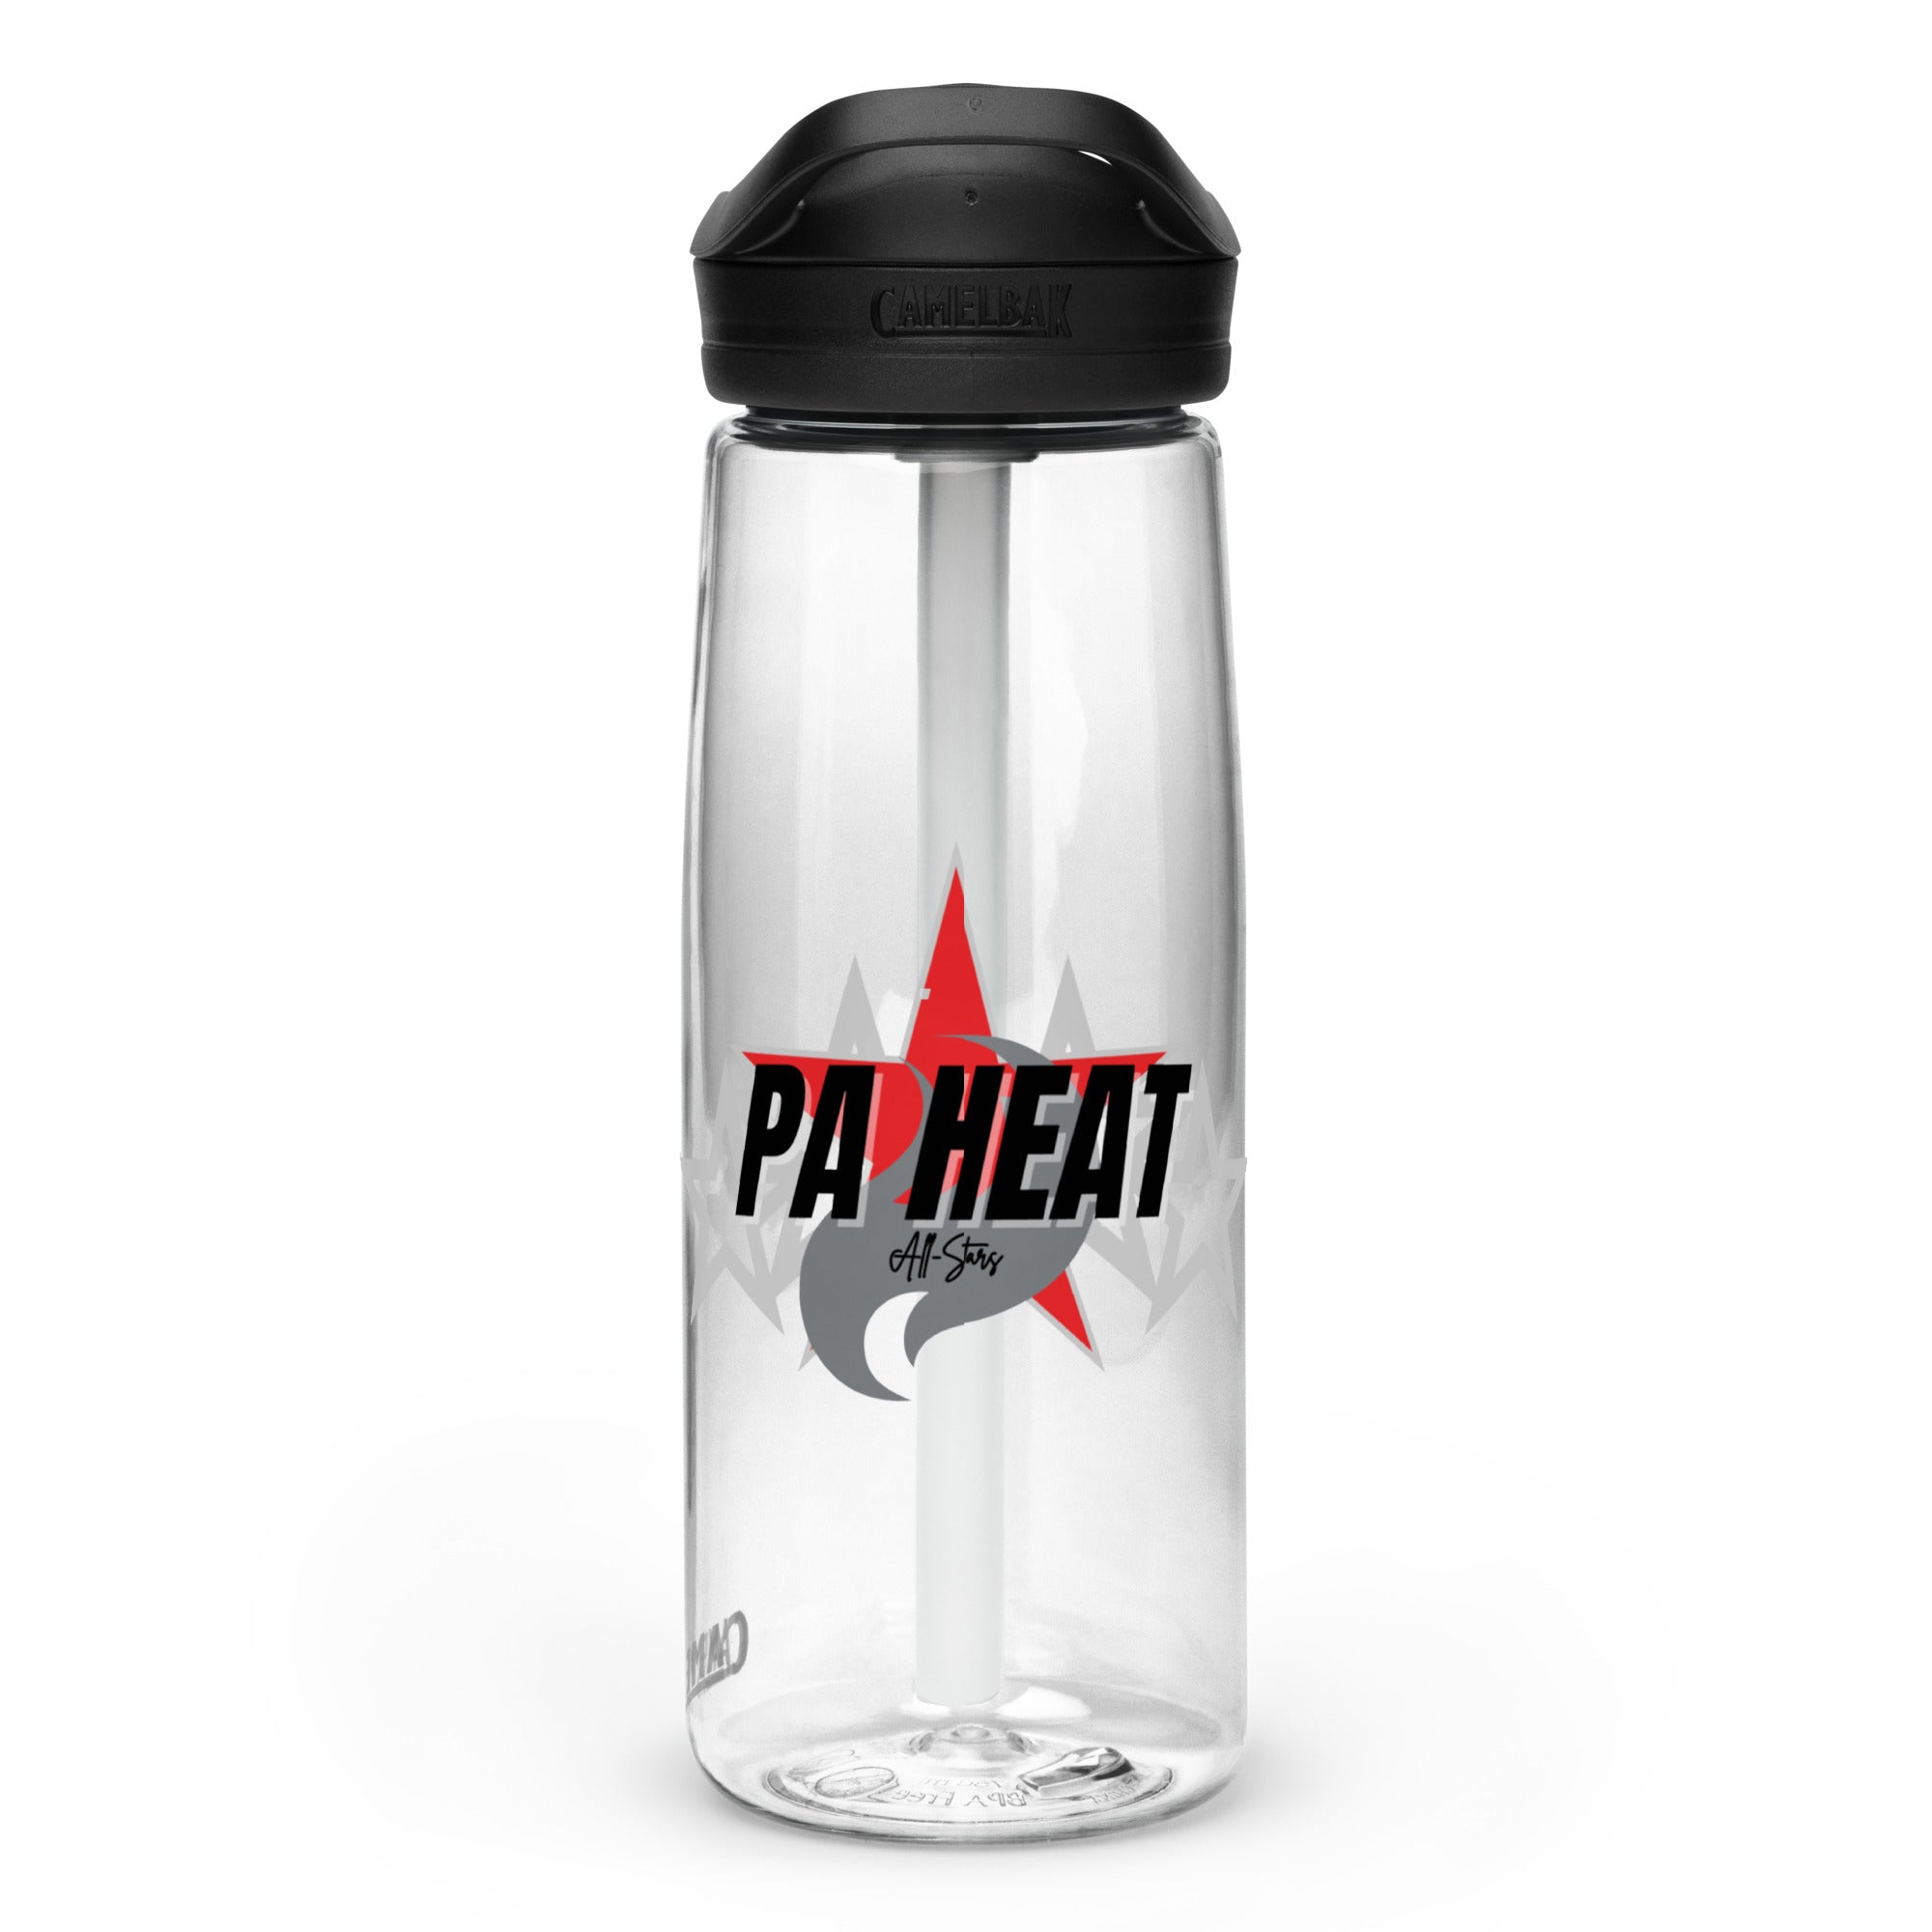 PAH Sports water bottle